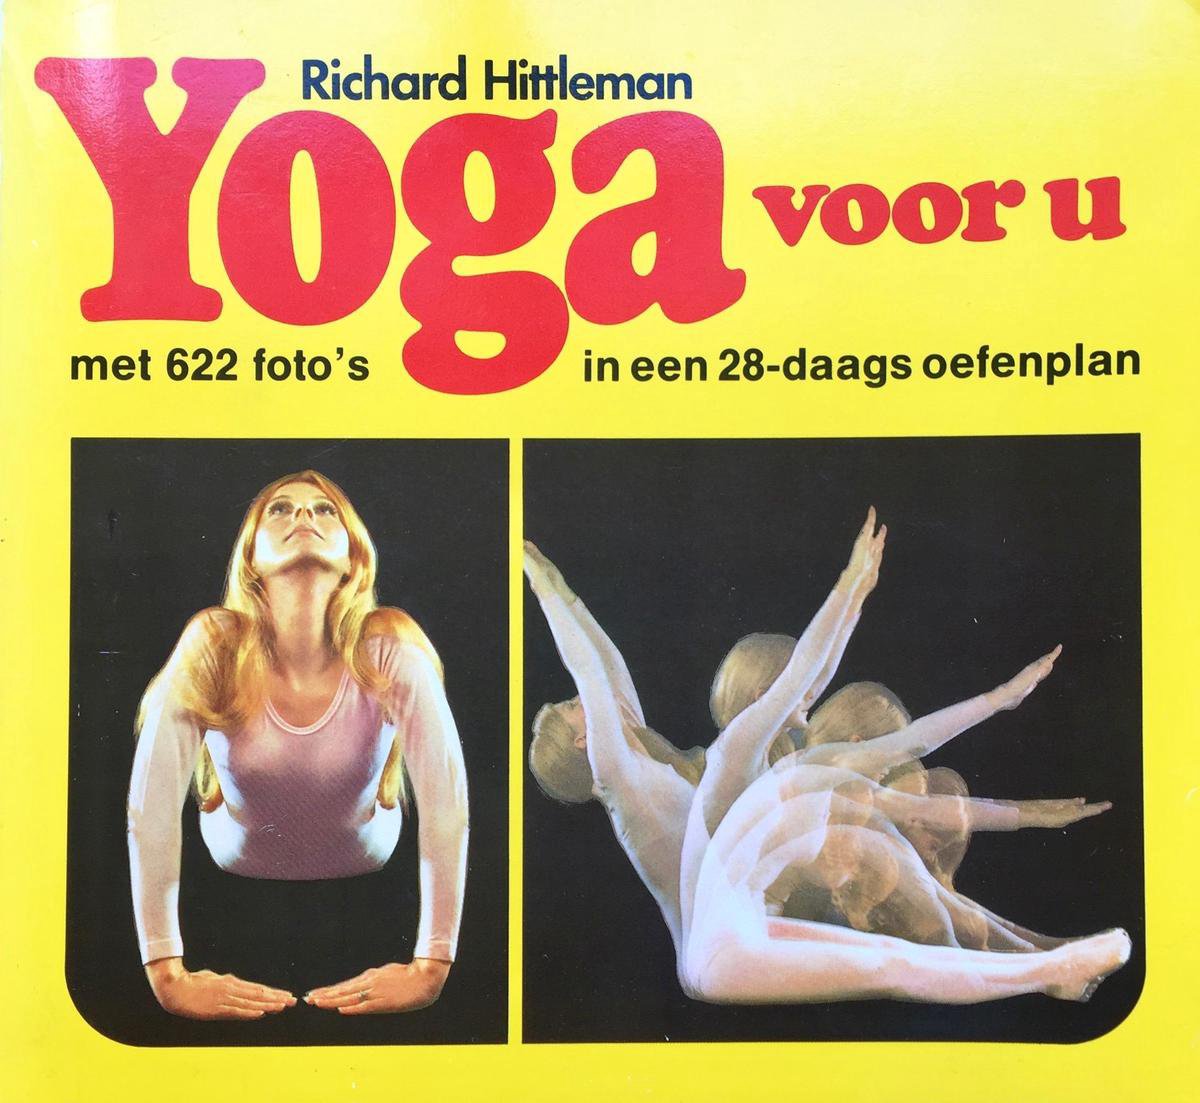 Yoga voor u